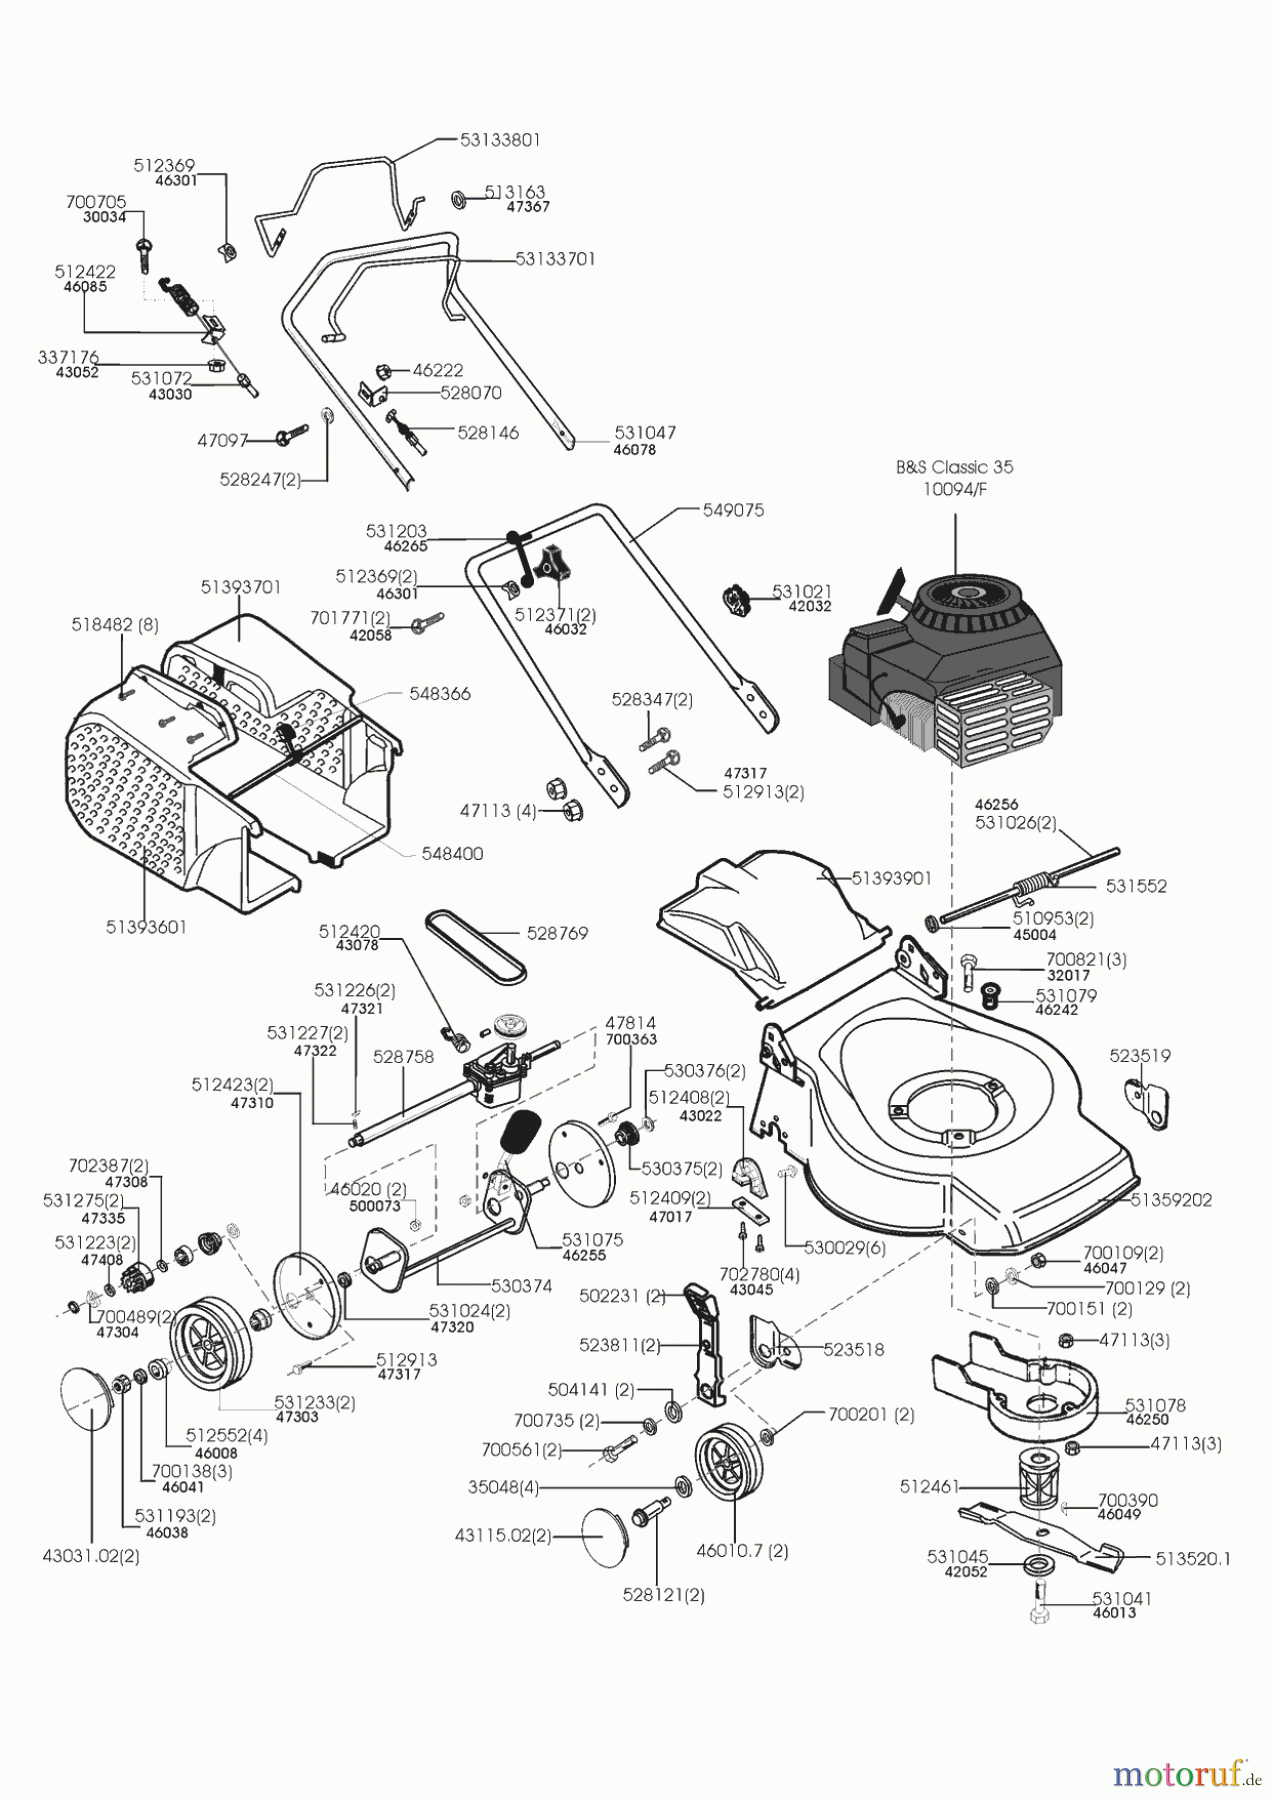  AL-KO Gartentechnik Benzinrasenmäher Cutter 46 PS T  12/1998 Seite 1